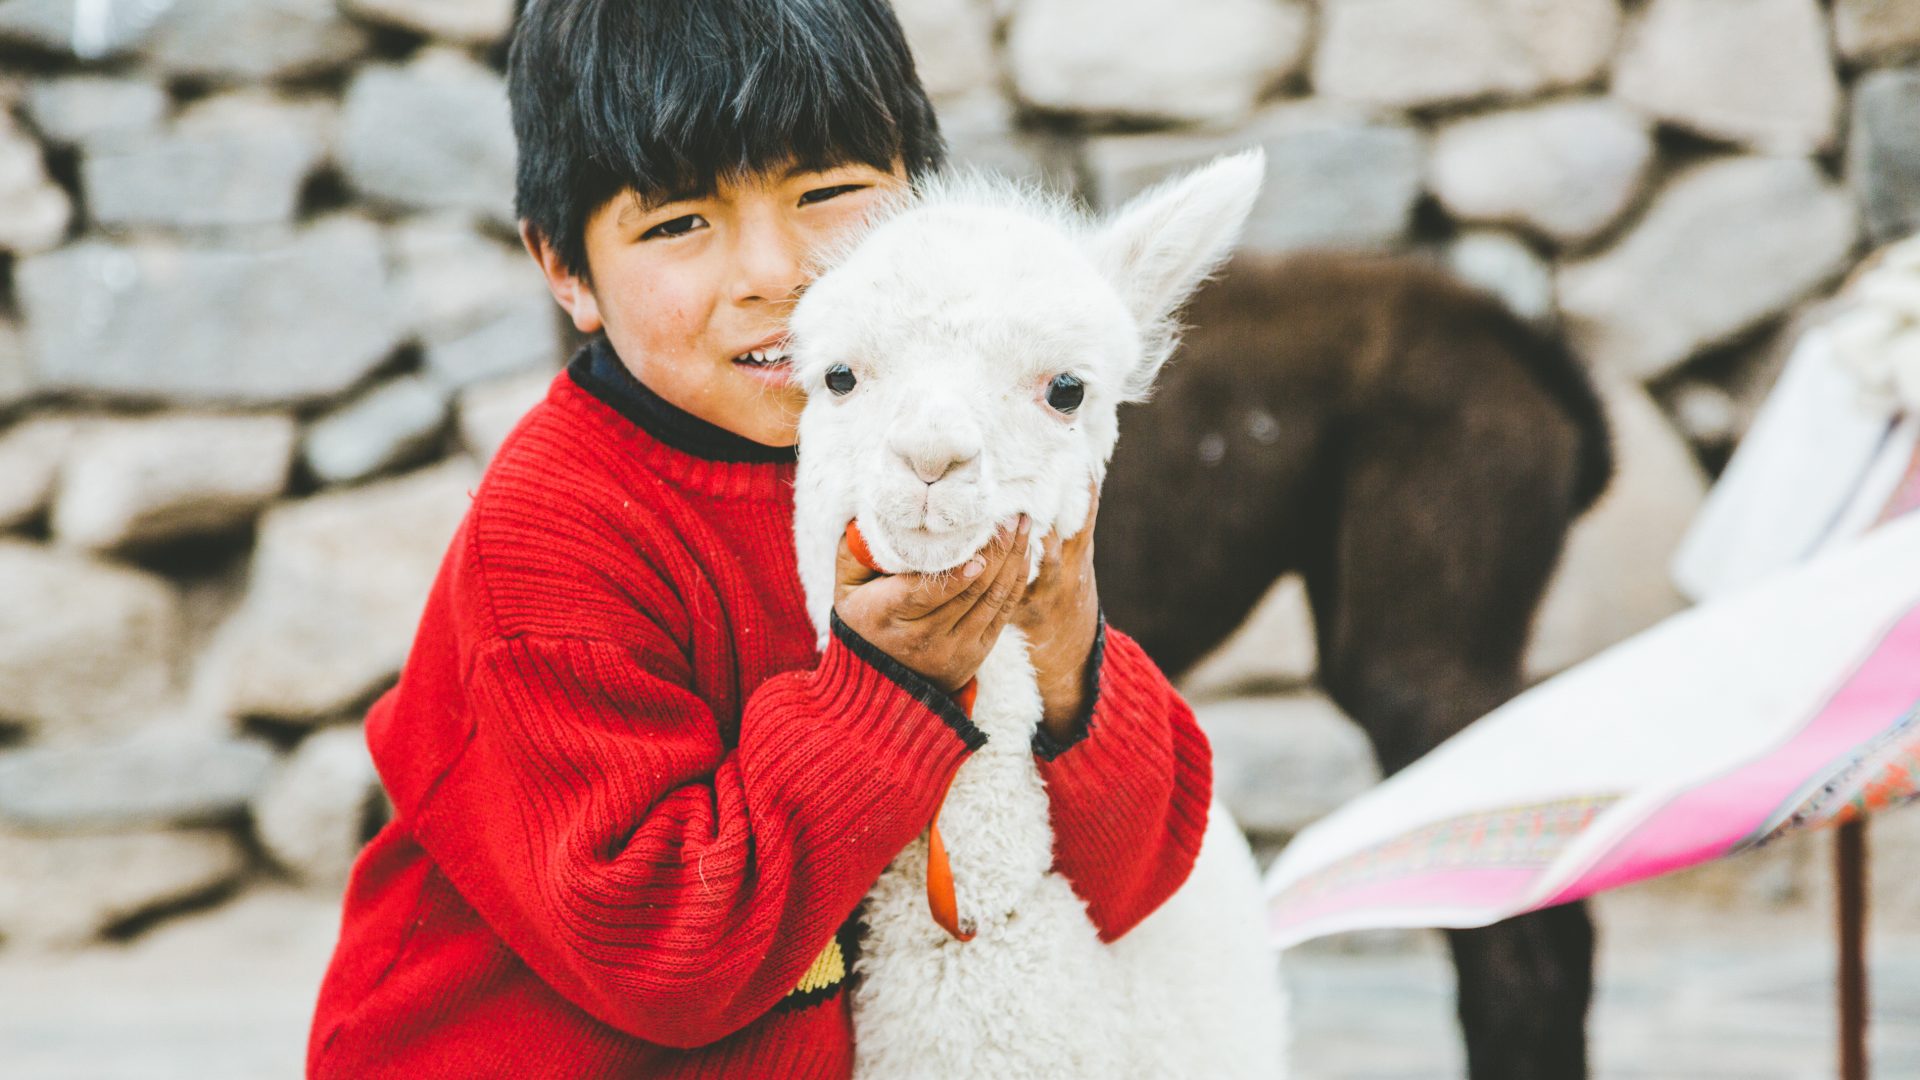 A young Peruvian boy hugging an Alpaca